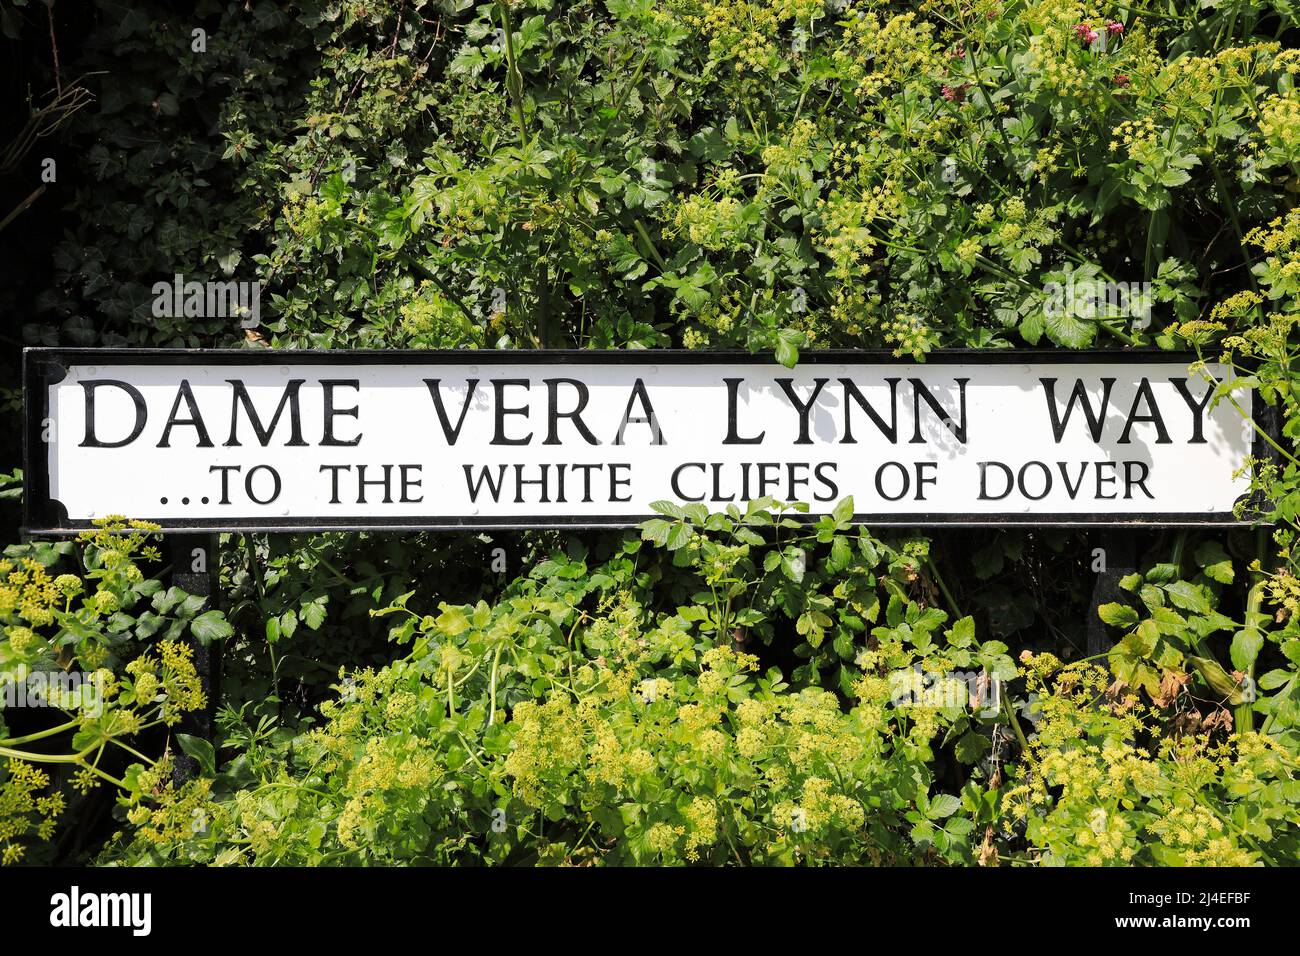 Il sentiero che porta dal lungomare alle bianche scogliere rinominato "Dame vera Lynn Way" con un nuovo segno, a dover, Kent, Regno Unito Foto Stock